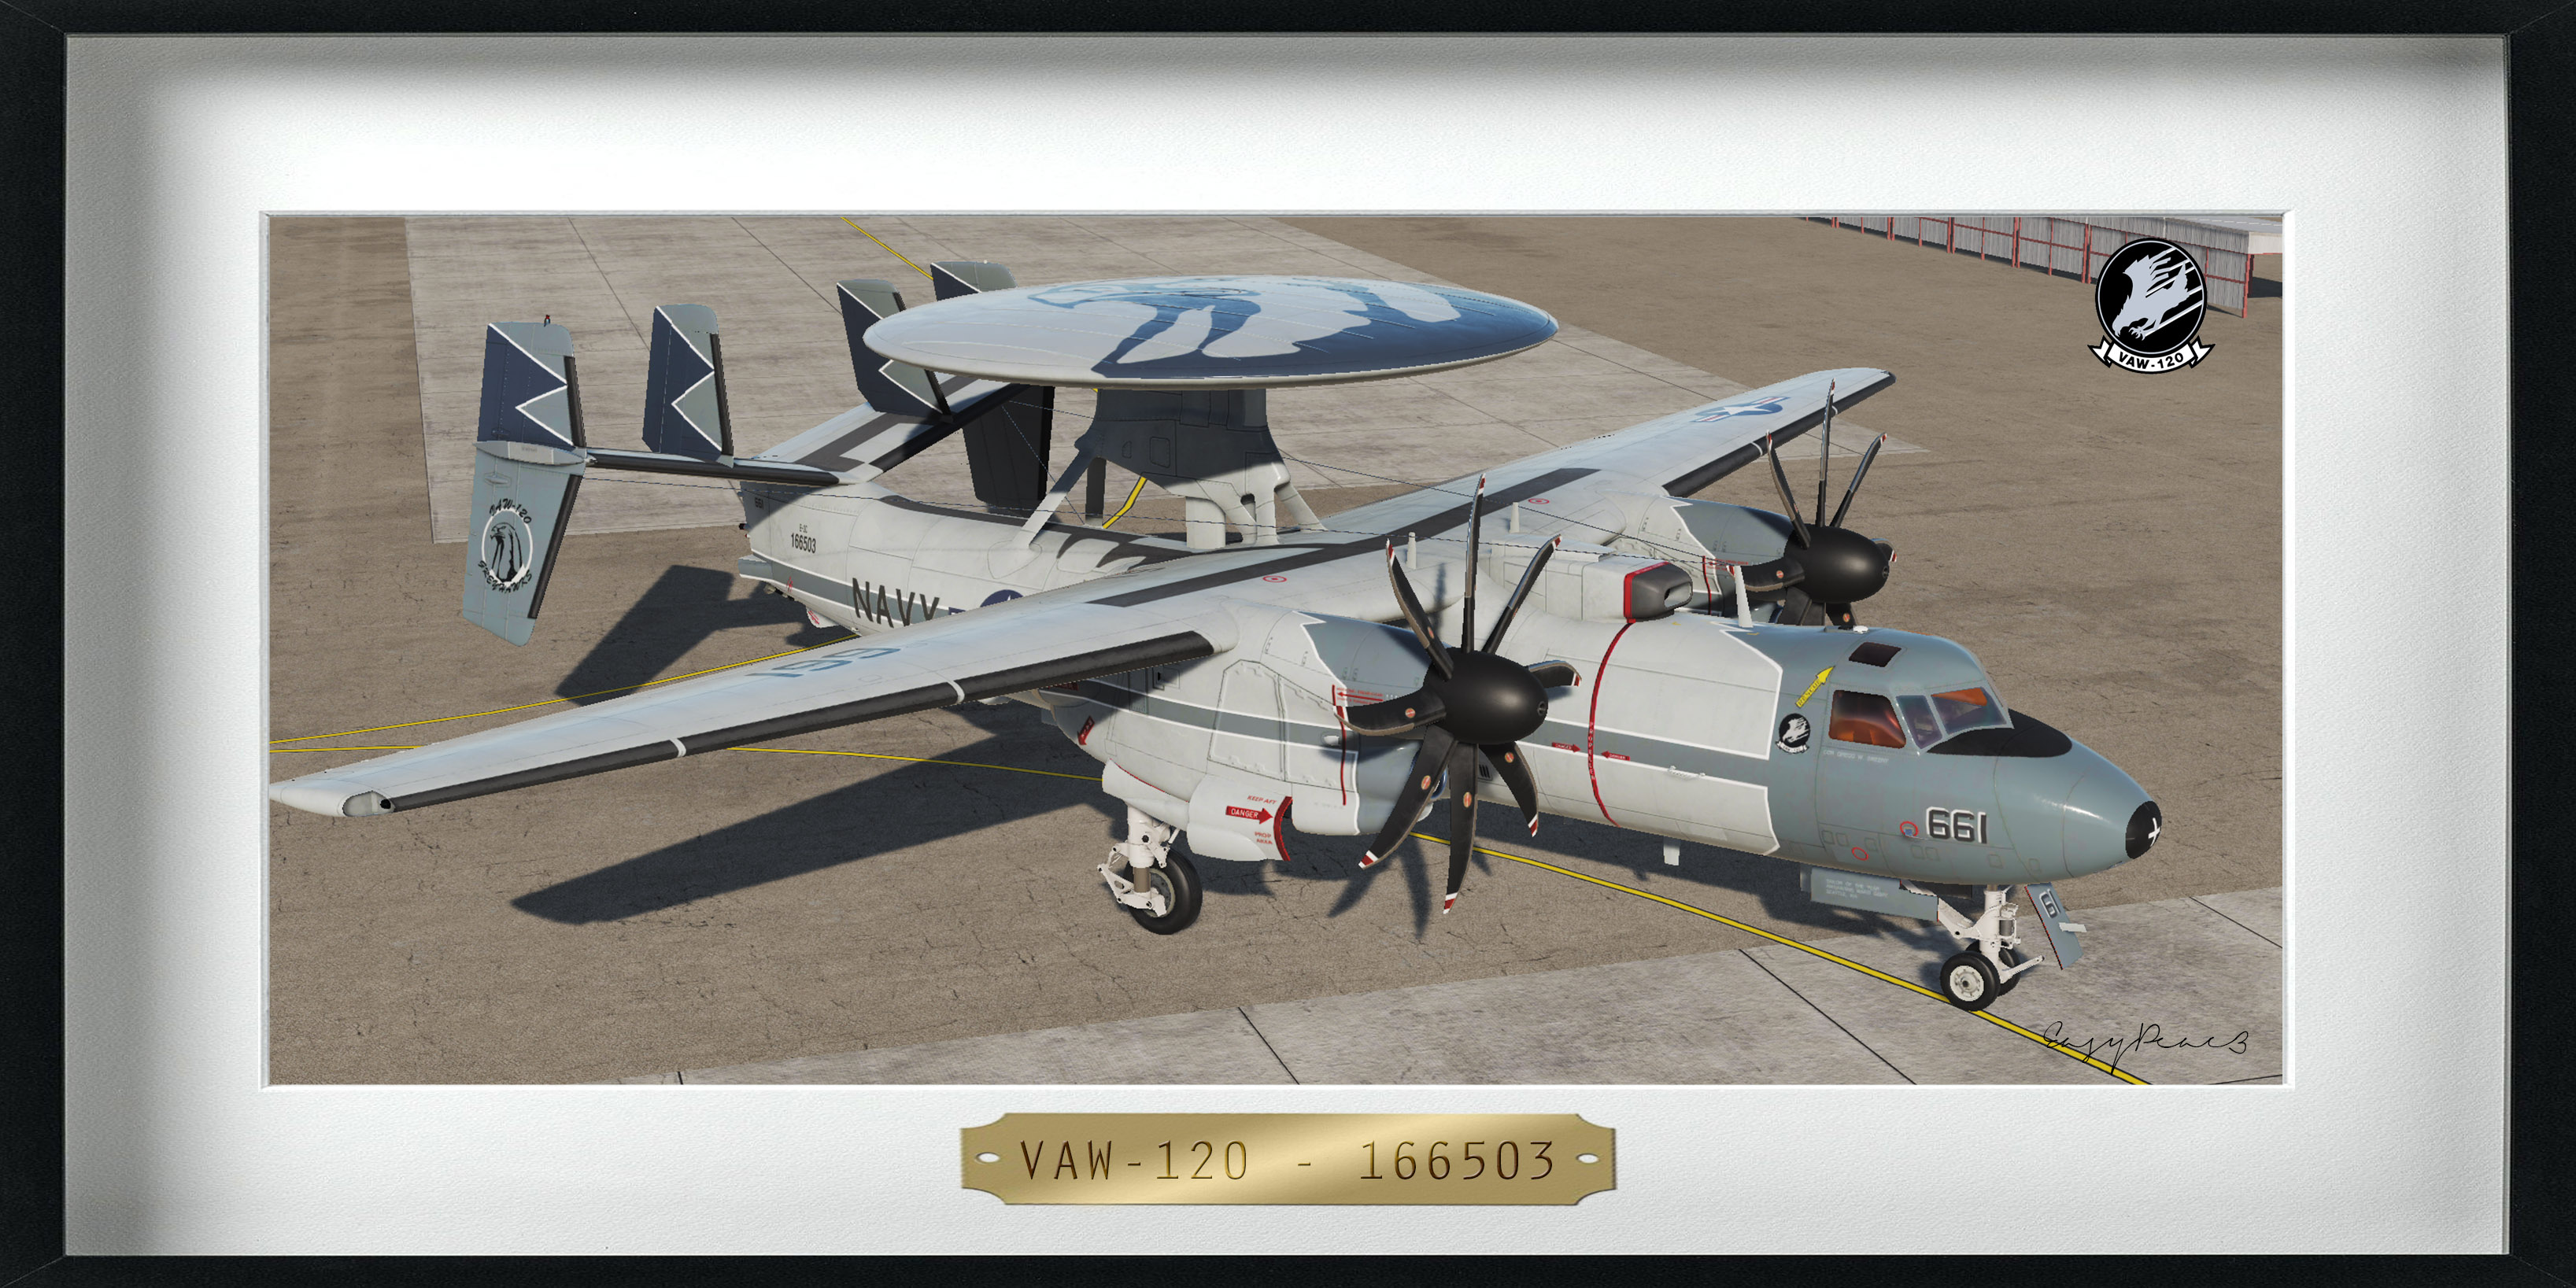 VAW-120 - "Greyhawks" - 166503 (4K)